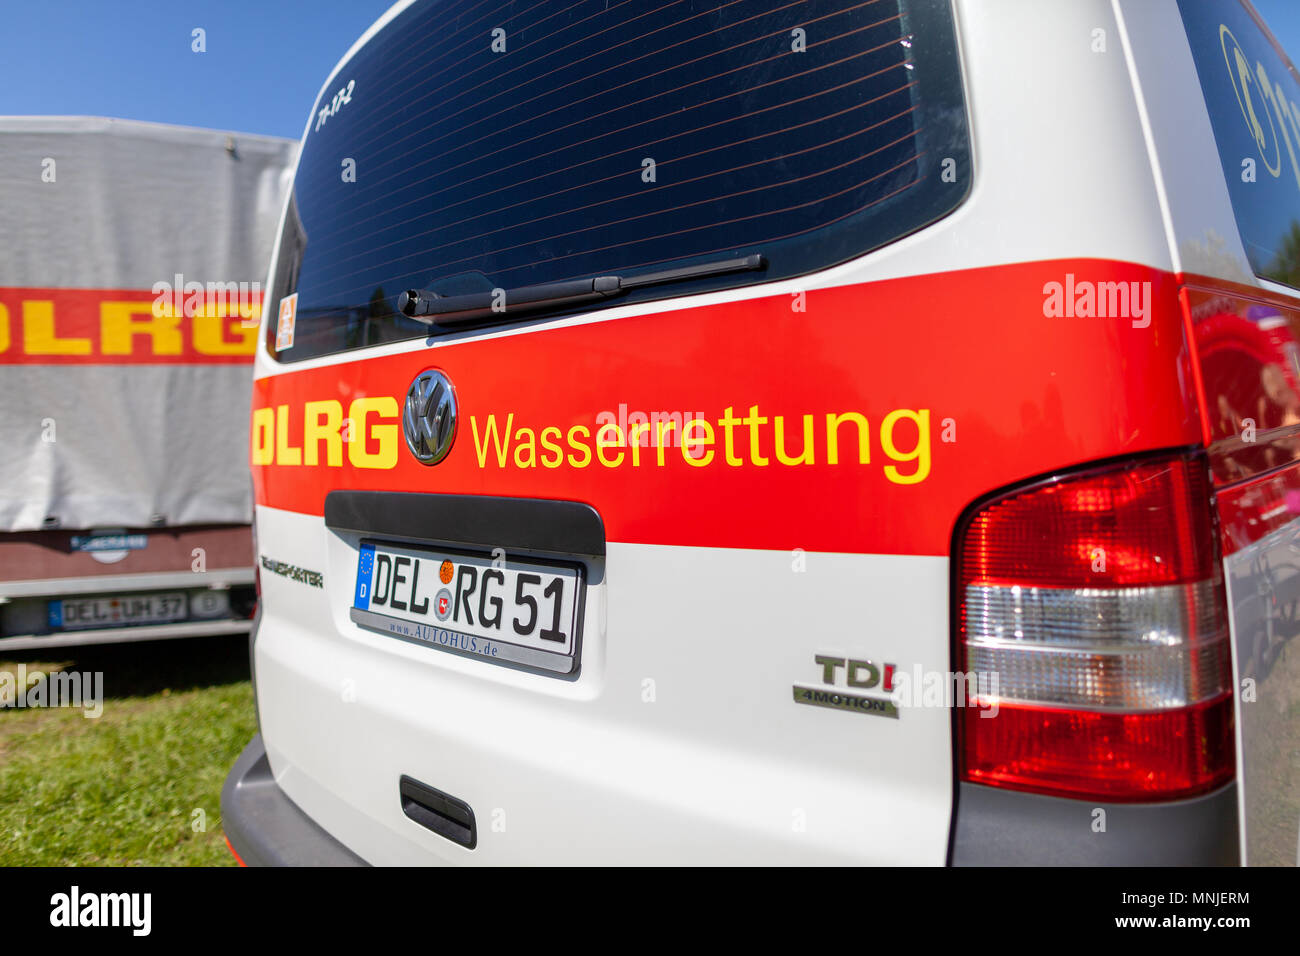 Delmenhorst/Deutschland - Mai 6, 2018: Deutsche VW Volkswagen Transporter von DLRG Wasserrettung steht auf einer Wiese. DLRG Wasserrettung bedeutet Deutscher Leben Stockfoto